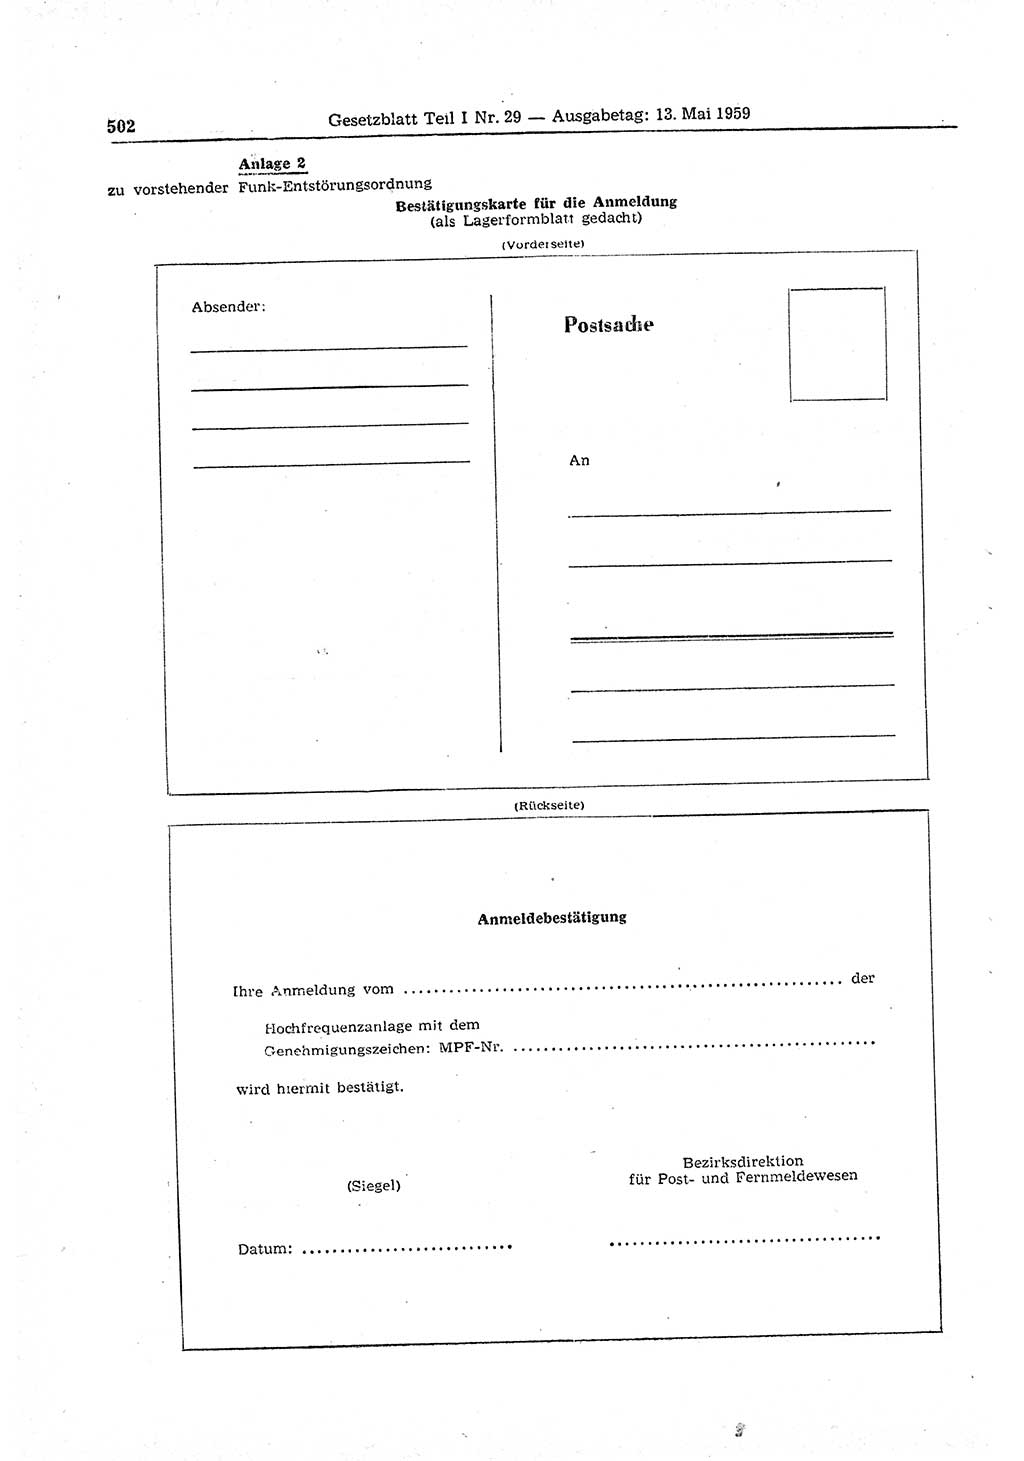 Gesetzblatt (GBl.) der Deutschen Demokratischen Republik (DDR) Teil Ⅰ 1959, Seite 502 (GBl. DDR Ⅰ 1959, S. 502)